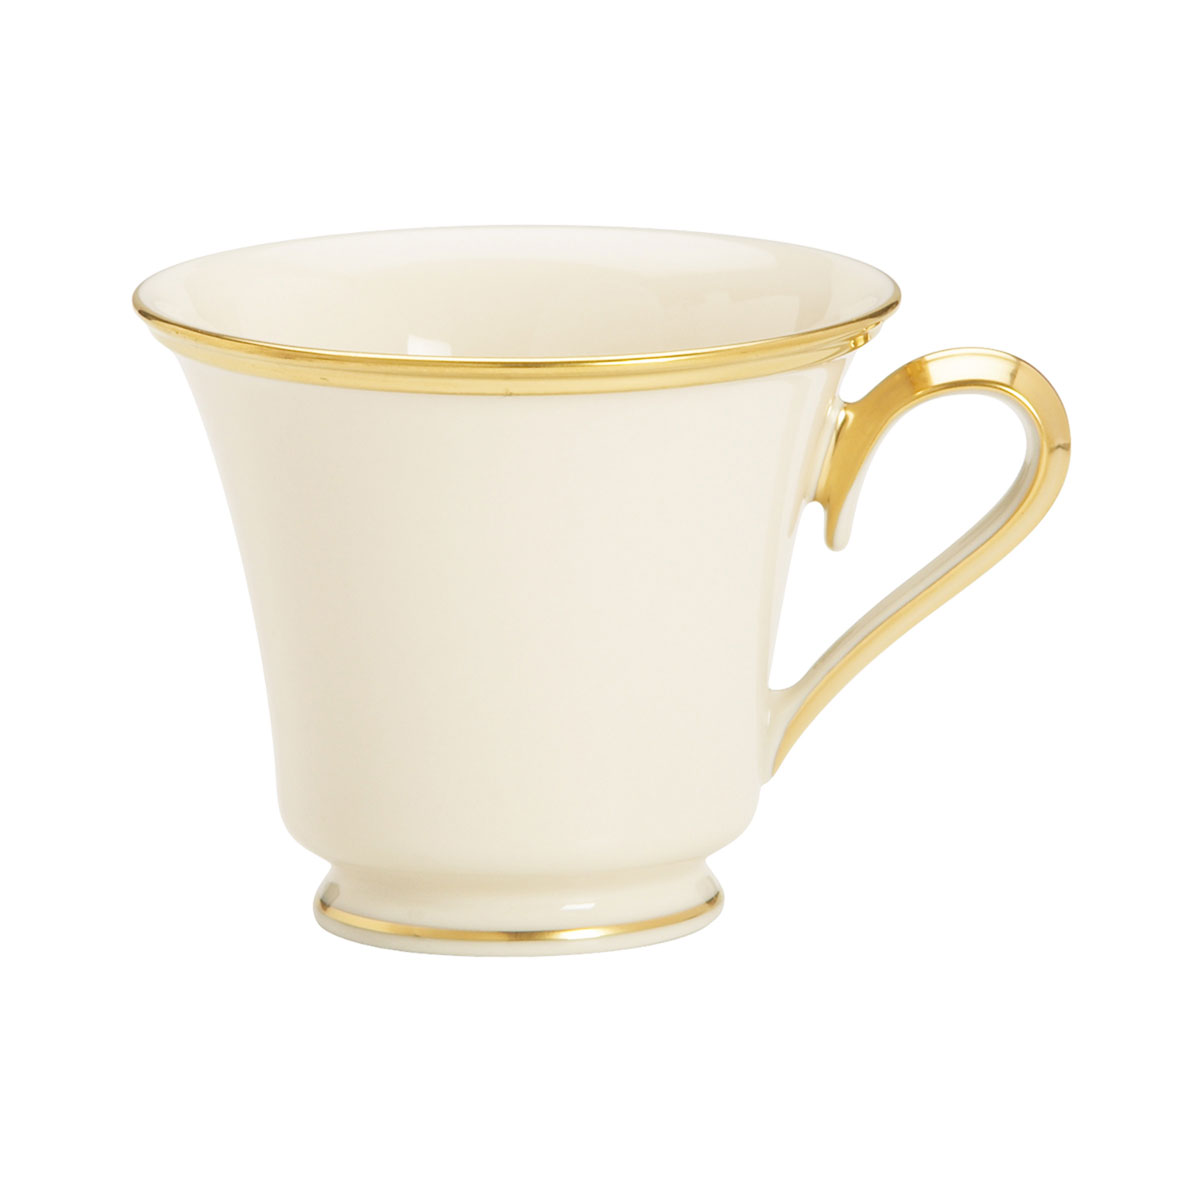 Lenox Eternal Tea Cup